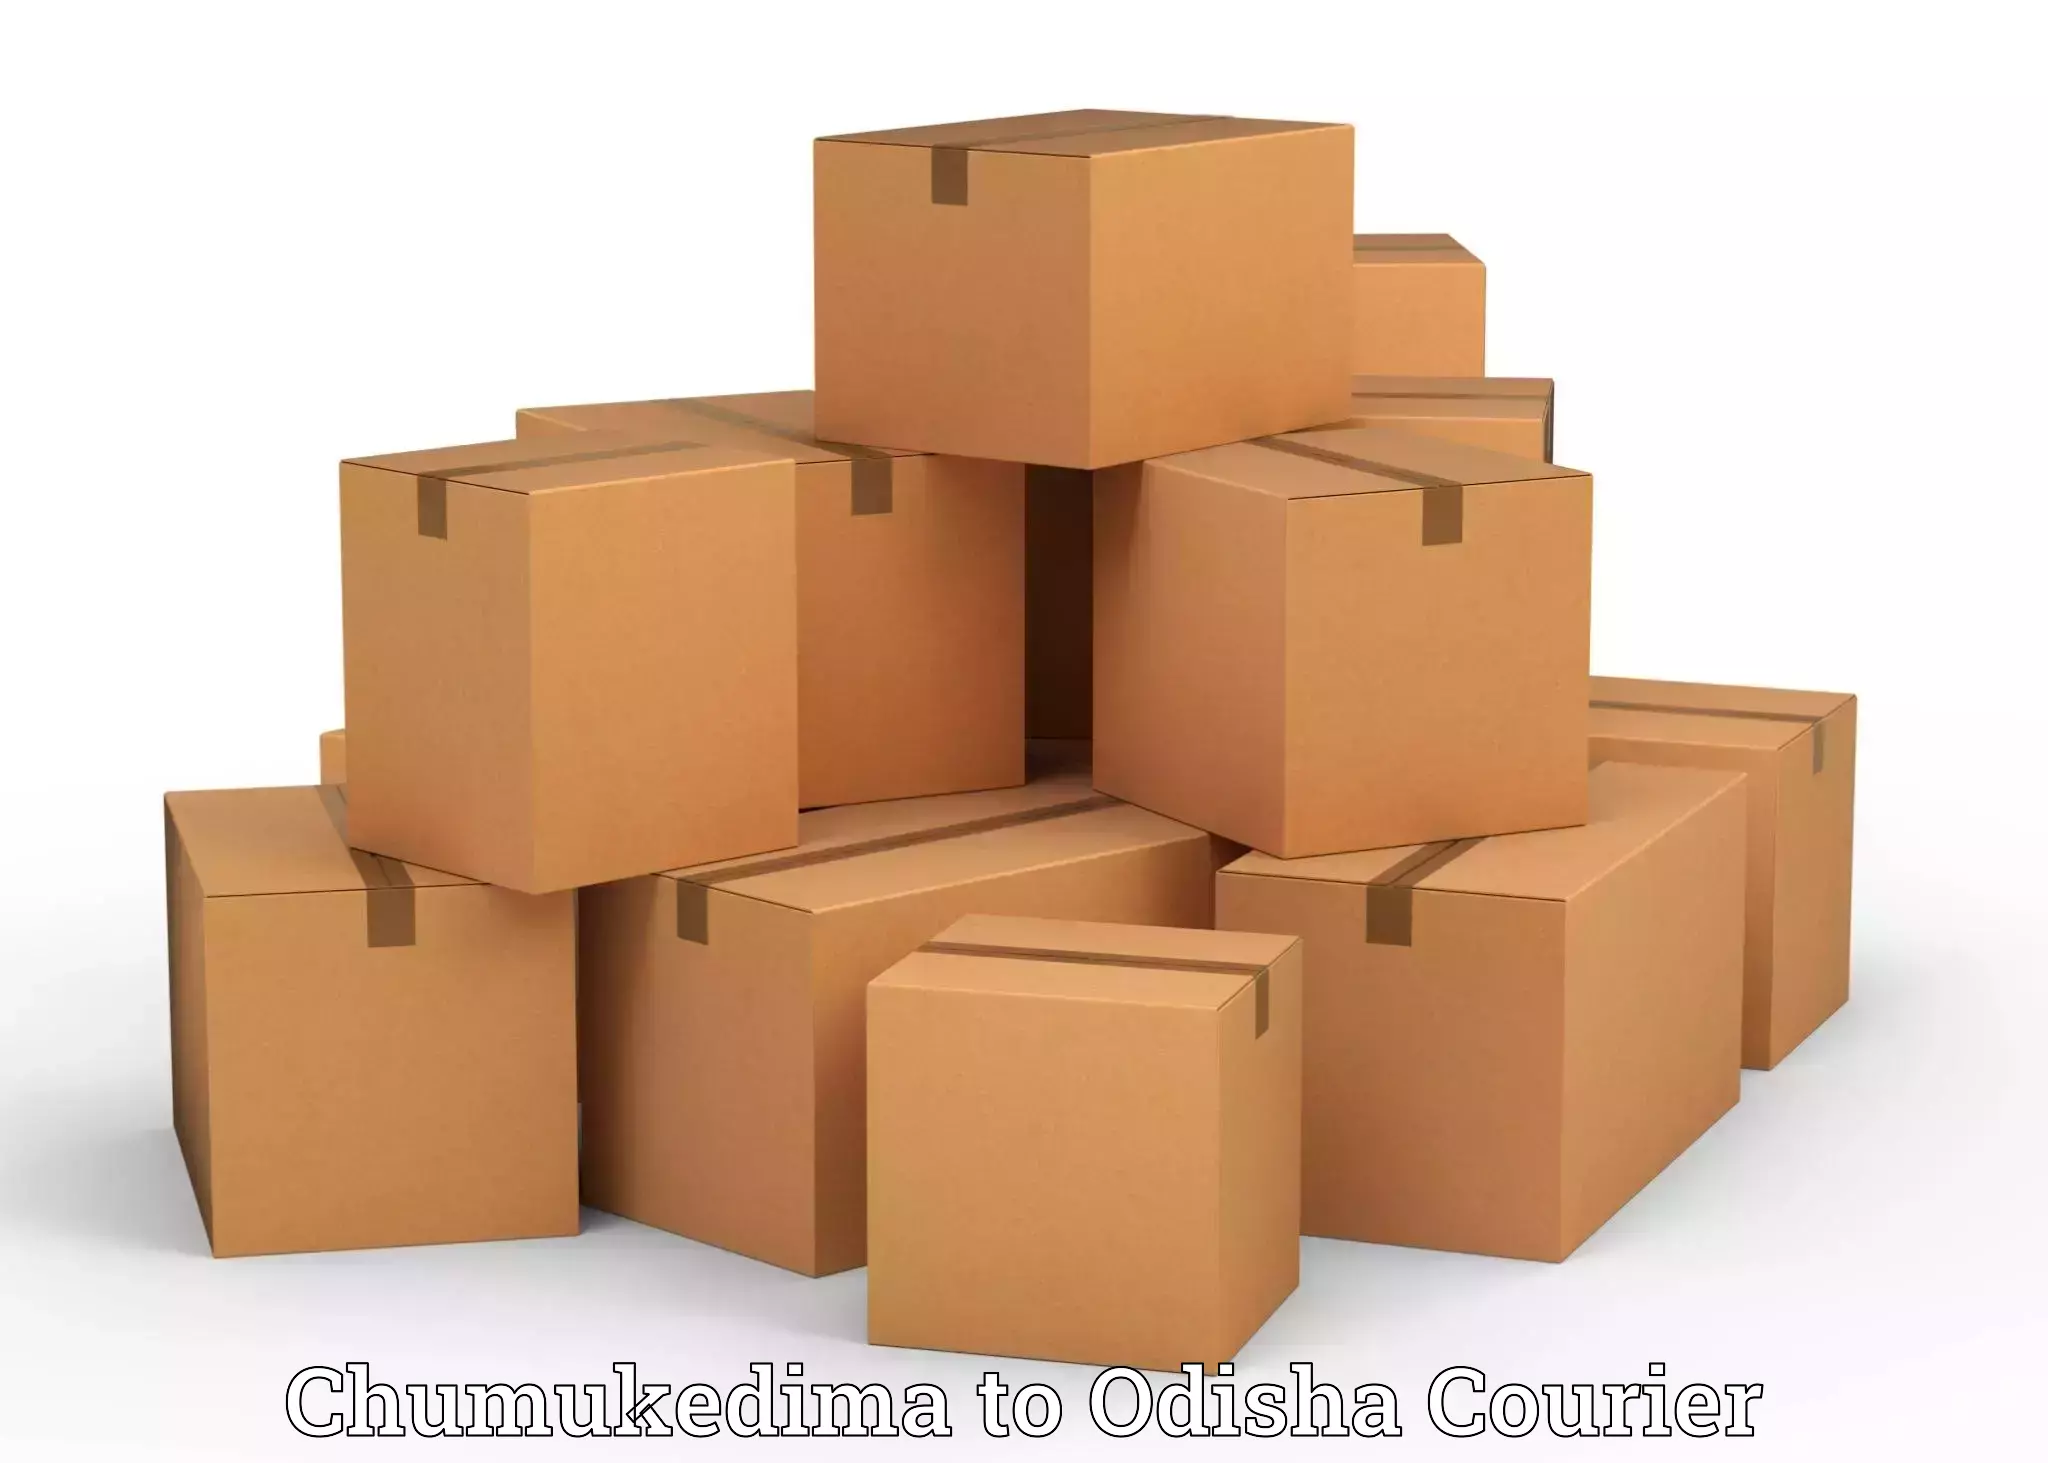 Professional packing services Chumukedima to Bhutasarasingi